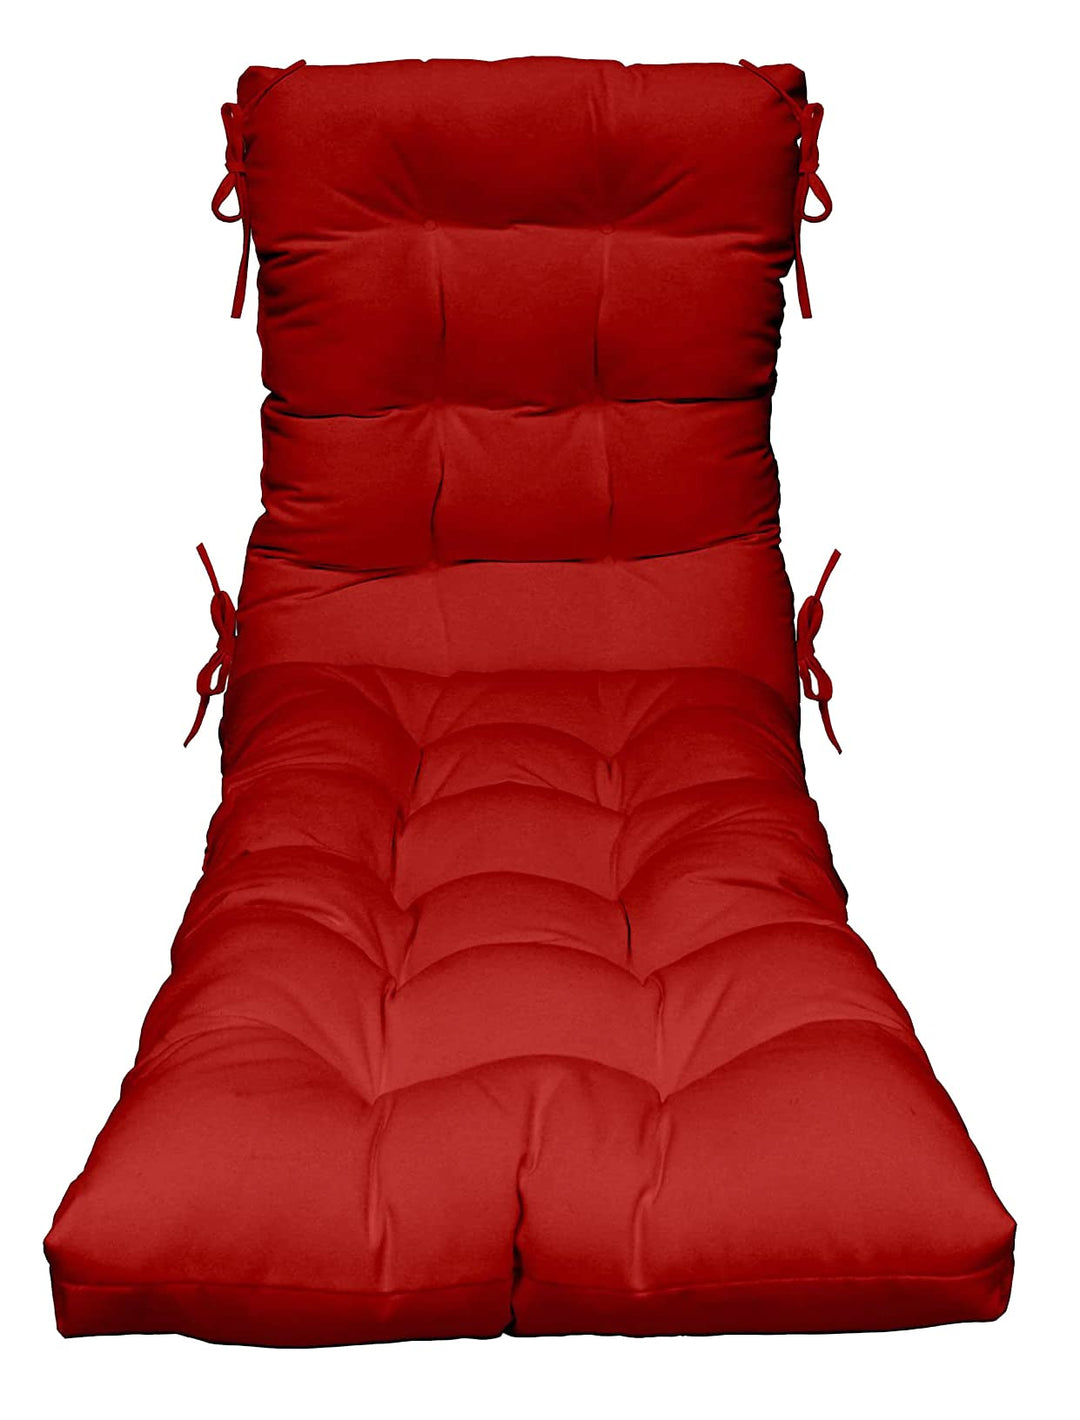 Chaise Lounge Chair Cushion | Tufted | 72" H x 22" W | Sunbrella Canvas Jockey Red - RSH Decor